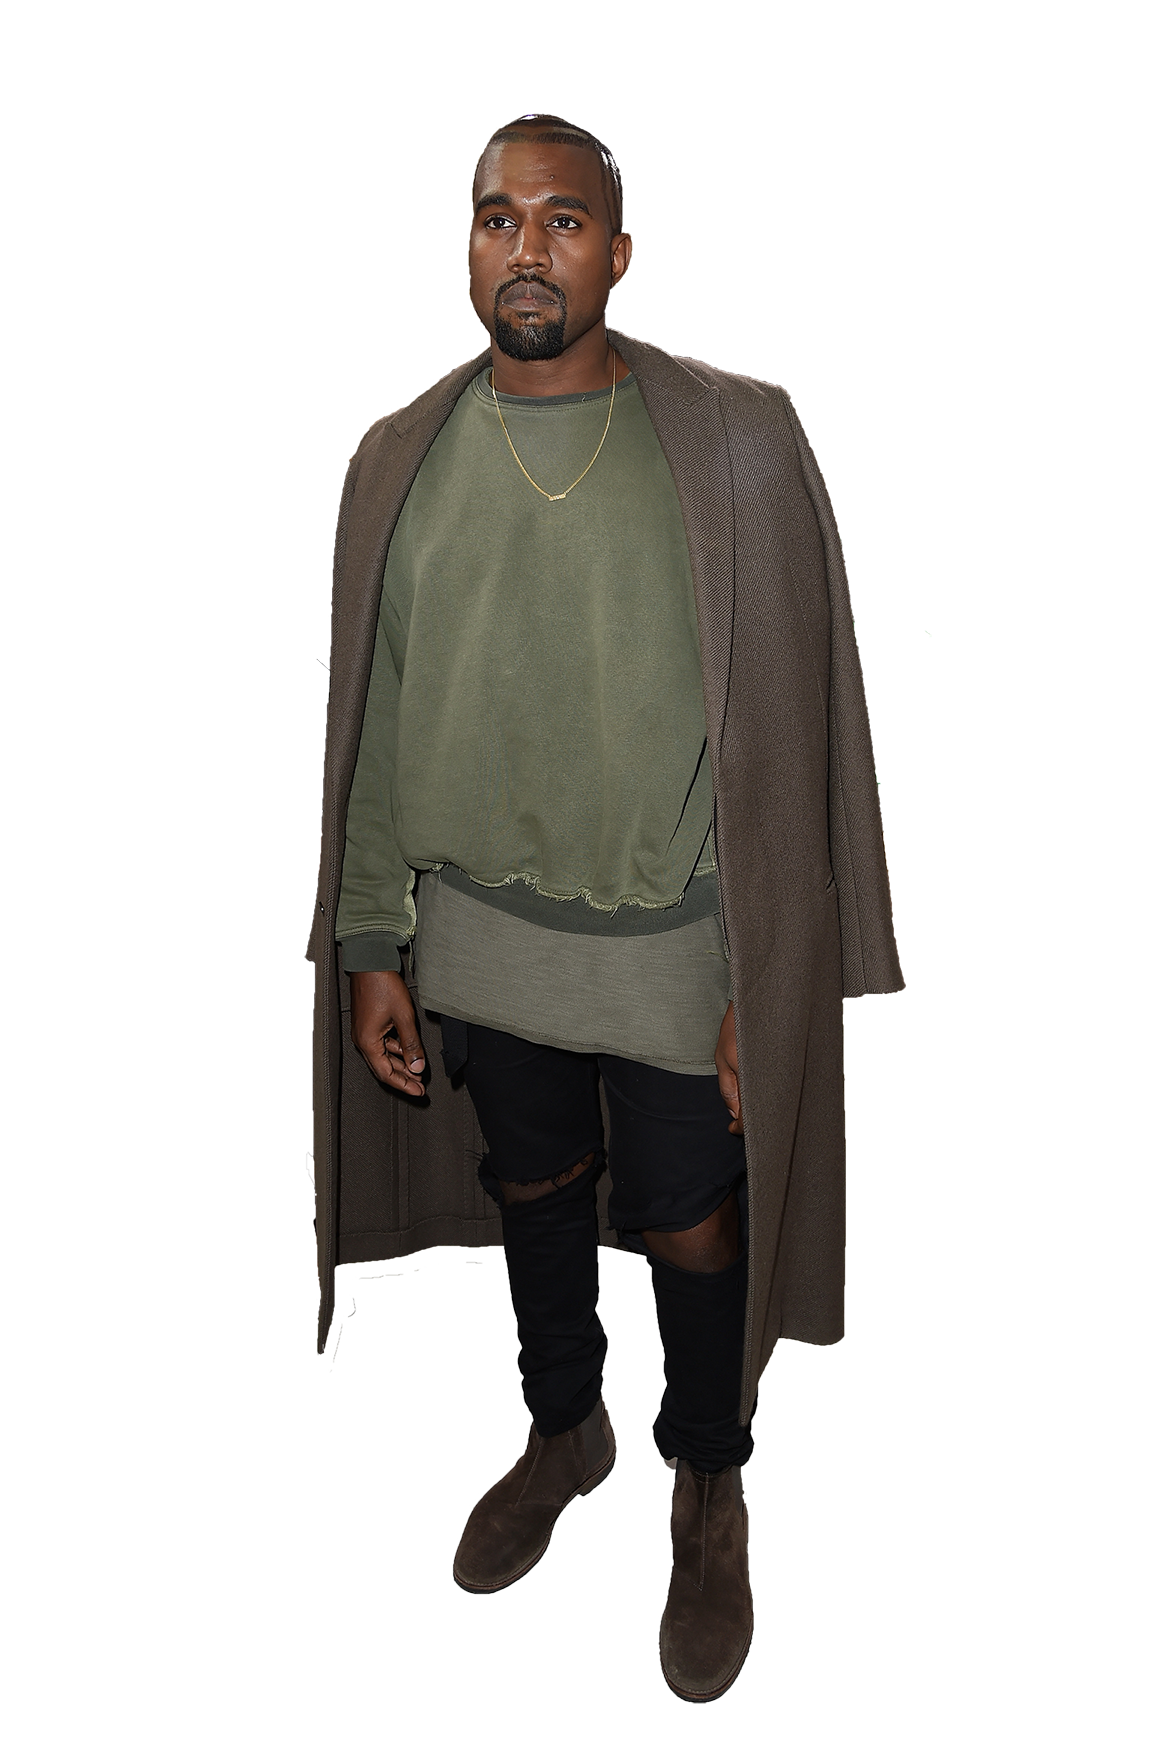 Rapper Kanye West PNG Transparentes Bild